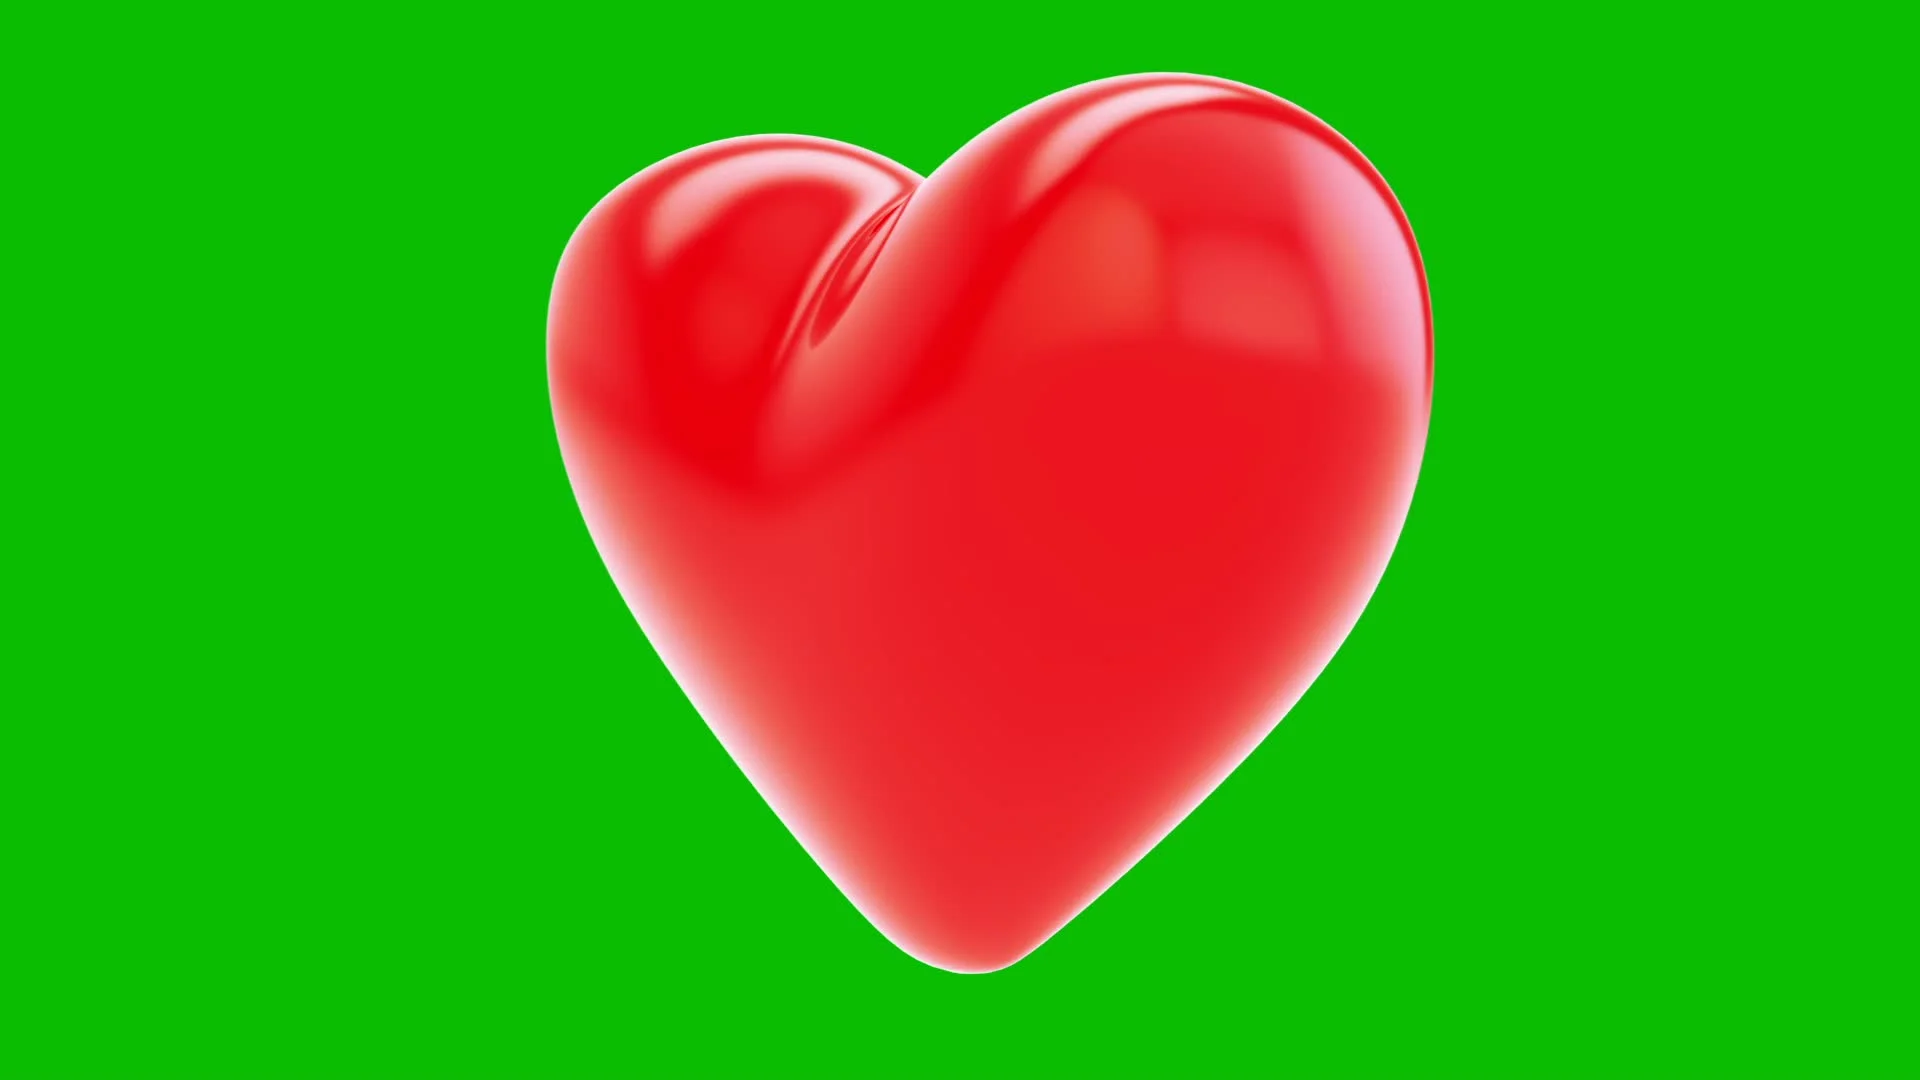 Heart rotation: Xem hình ảnh trái tim xoay trên nền xanh lá cây sẽ khiến bạn bị lôi cuốn bởi sự đẹp mắt và sáng tạo của nó. Bạn sẽ được tận mắt chứng kiến những gì trái tim có thể làm được trên màn hình!